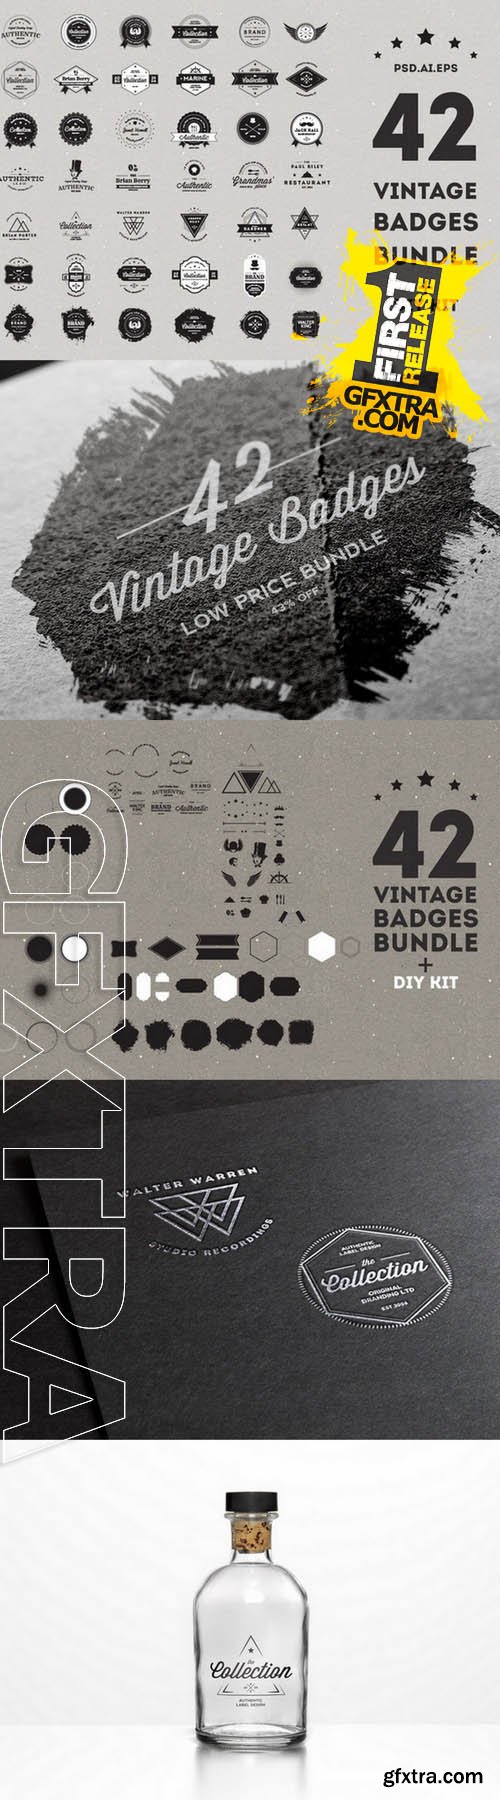 Vintage Badges Bundle - 50% off - Creativemarket 37291